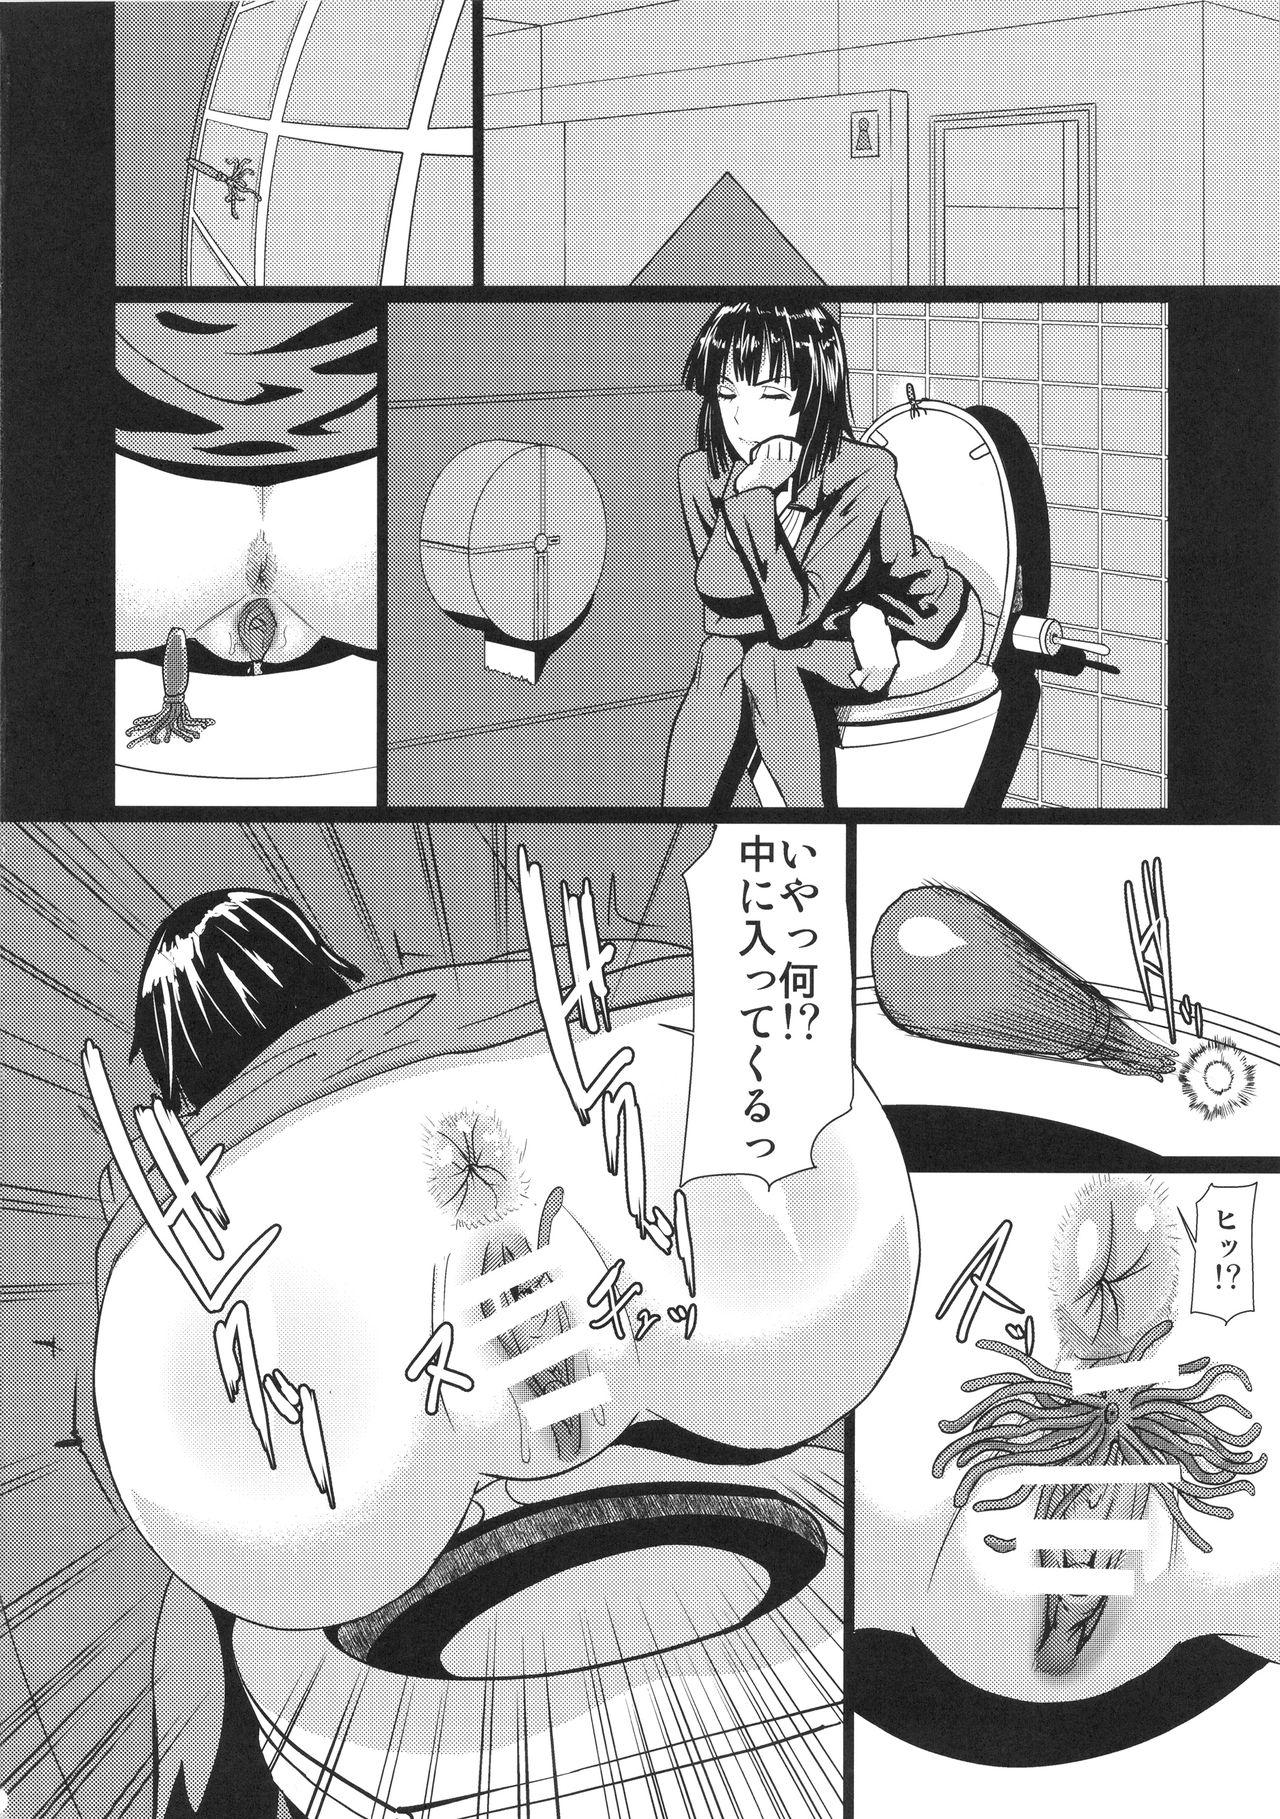 Hot Fubuki-sama no Shirarezaru Nichijou - One punch man 19yo - Page 5